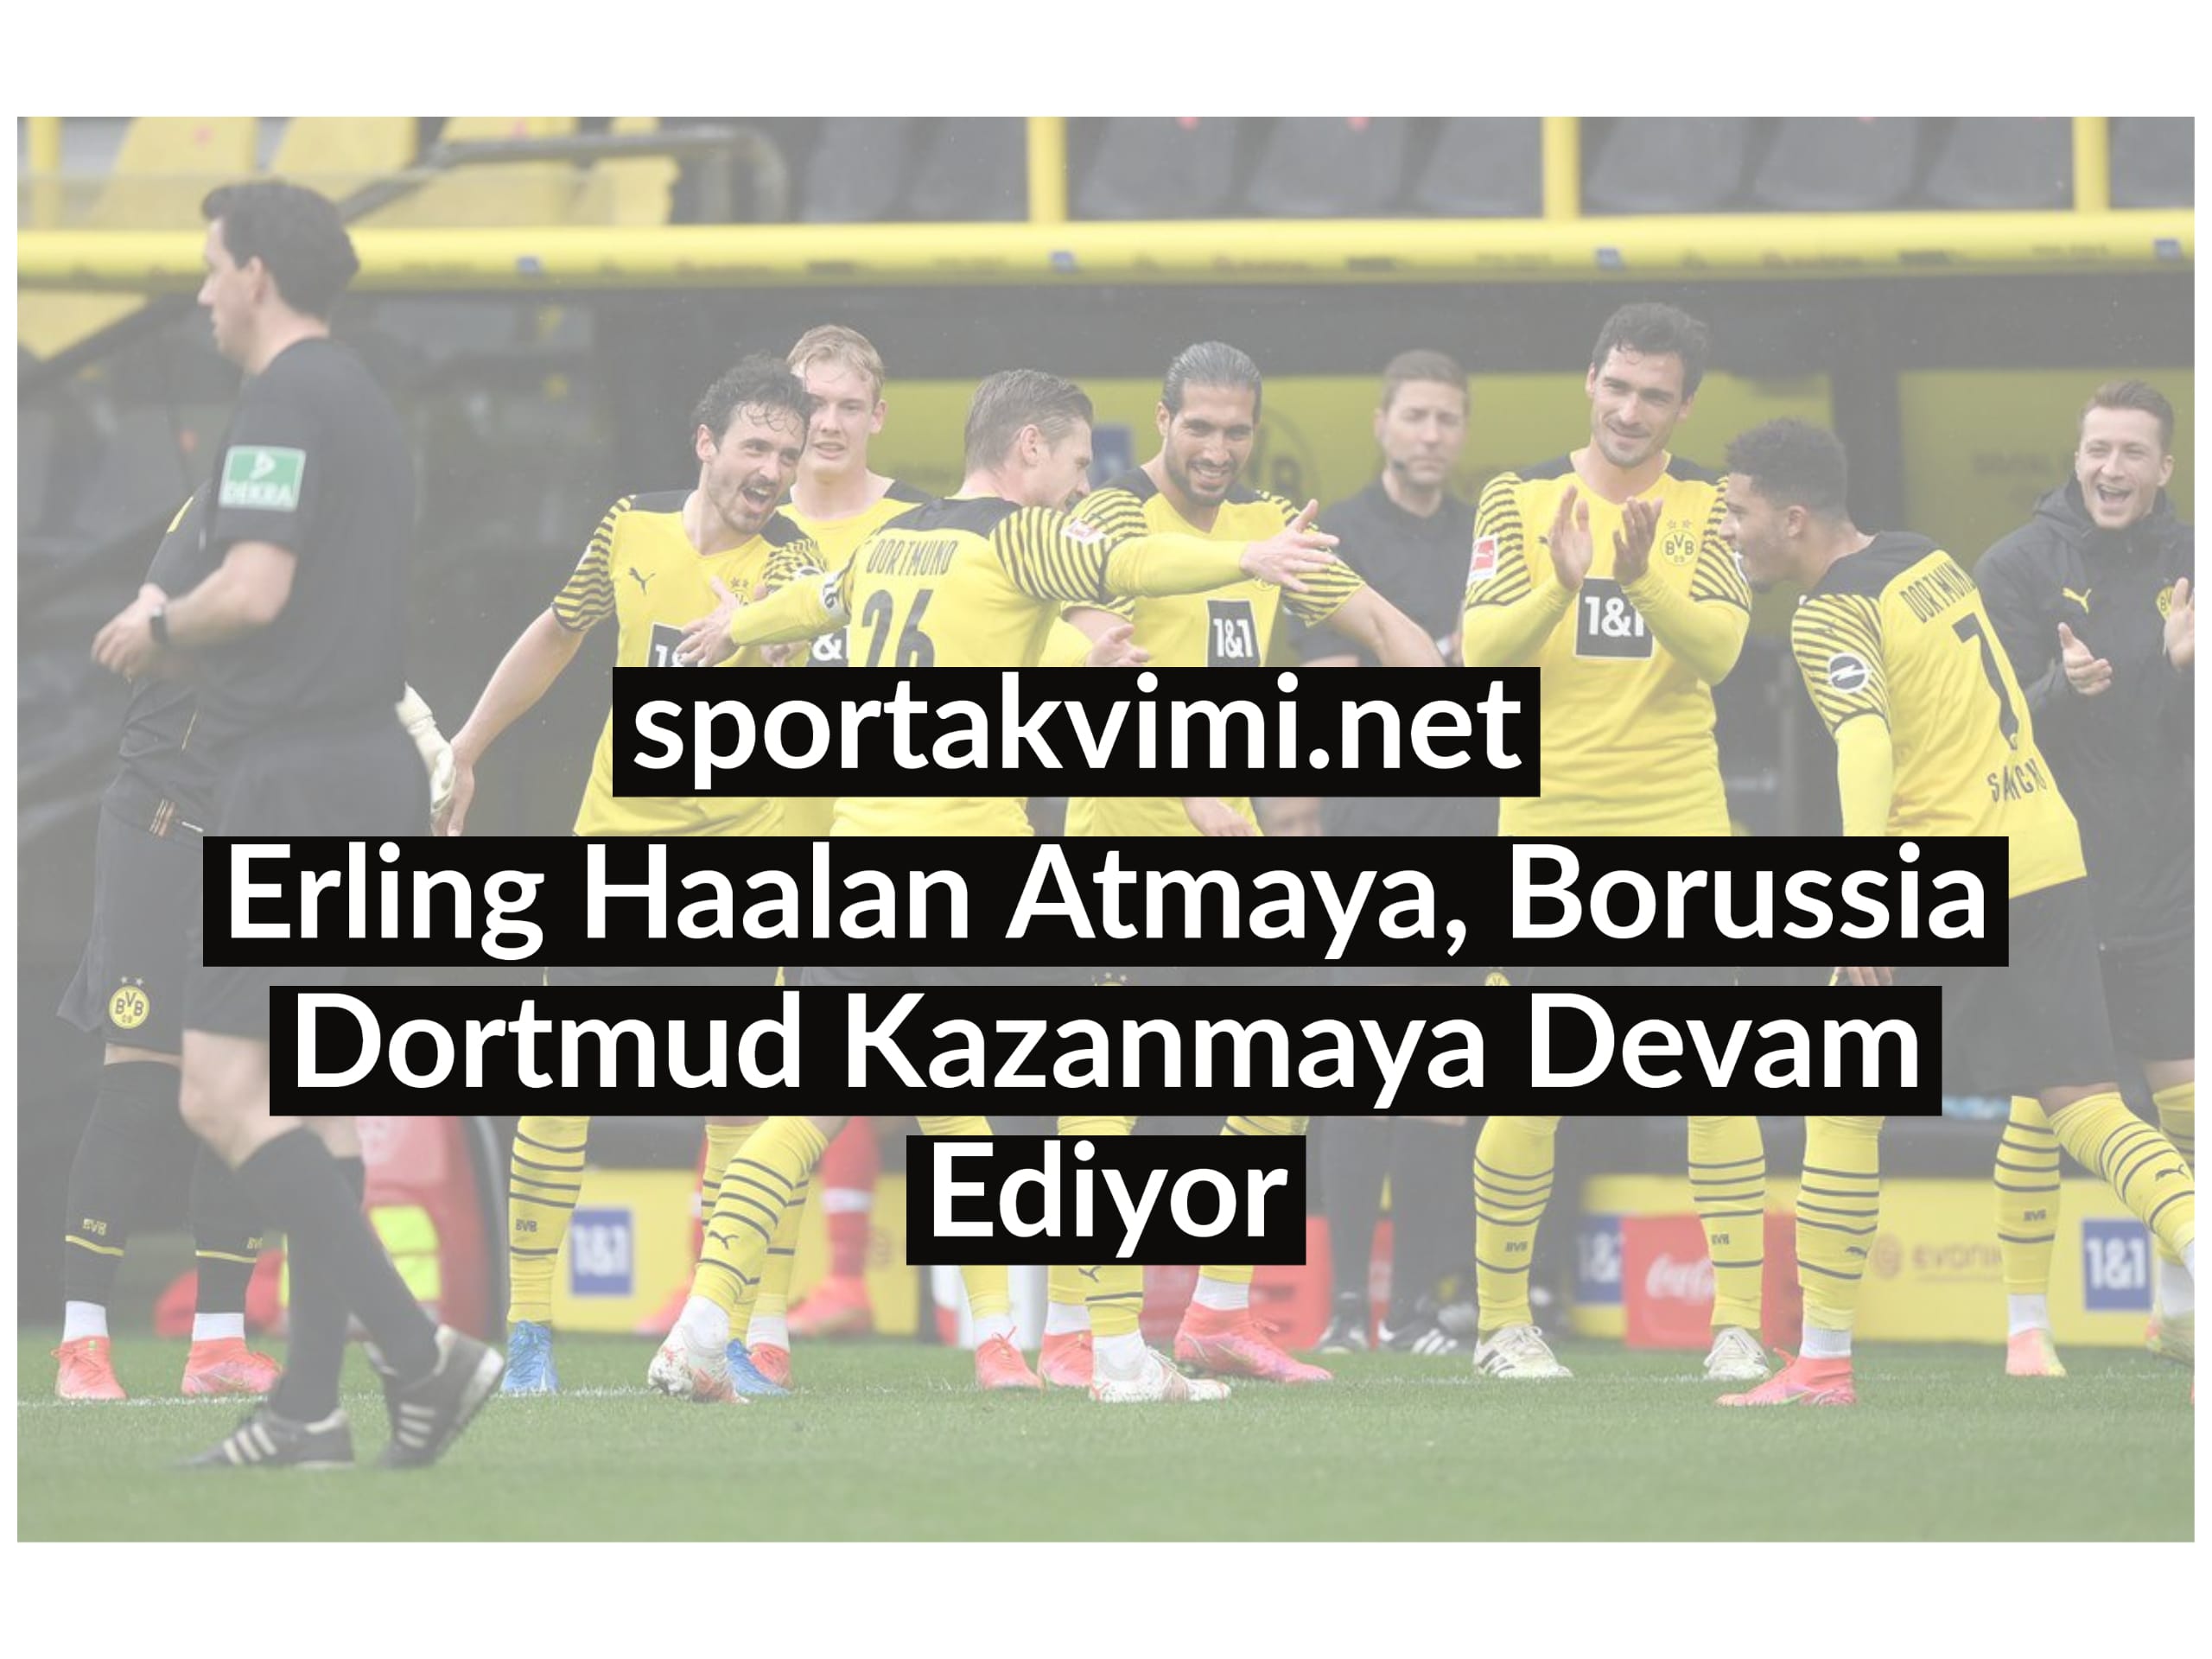 Erling Haalan Atmaya, Borussia Dortmud Kazanmaya Devam Ediyor